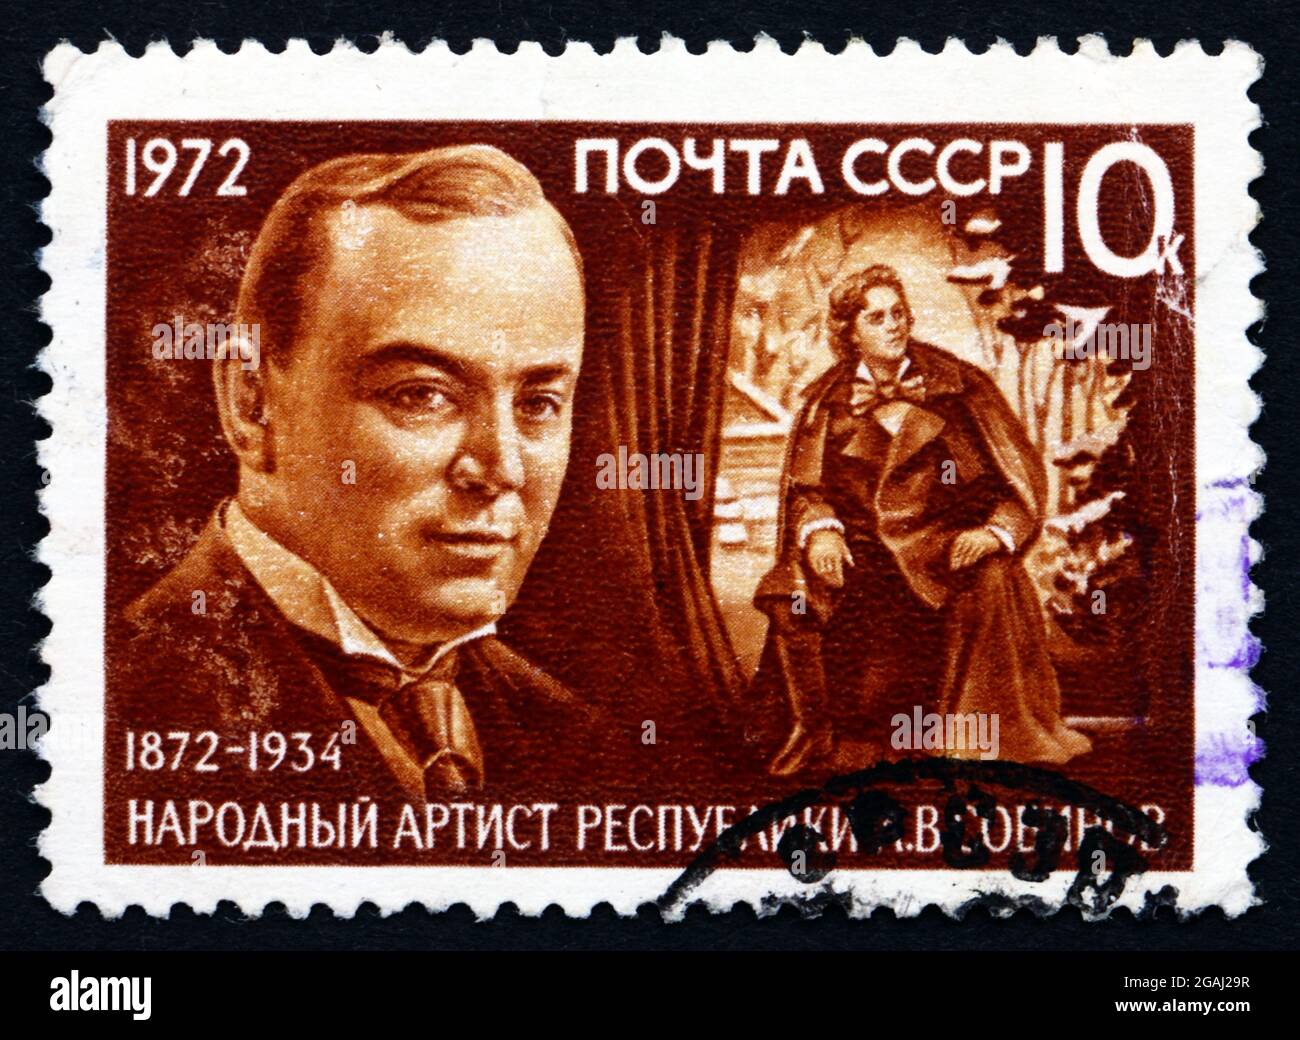 RUSSIE - VERS 1972: Un timbre imprimé en Russie montre Leonid Sobinov, chanteur d'opéra, à Eugene Onegin par Tchaïkovski, vers 1972 Banque D'Images